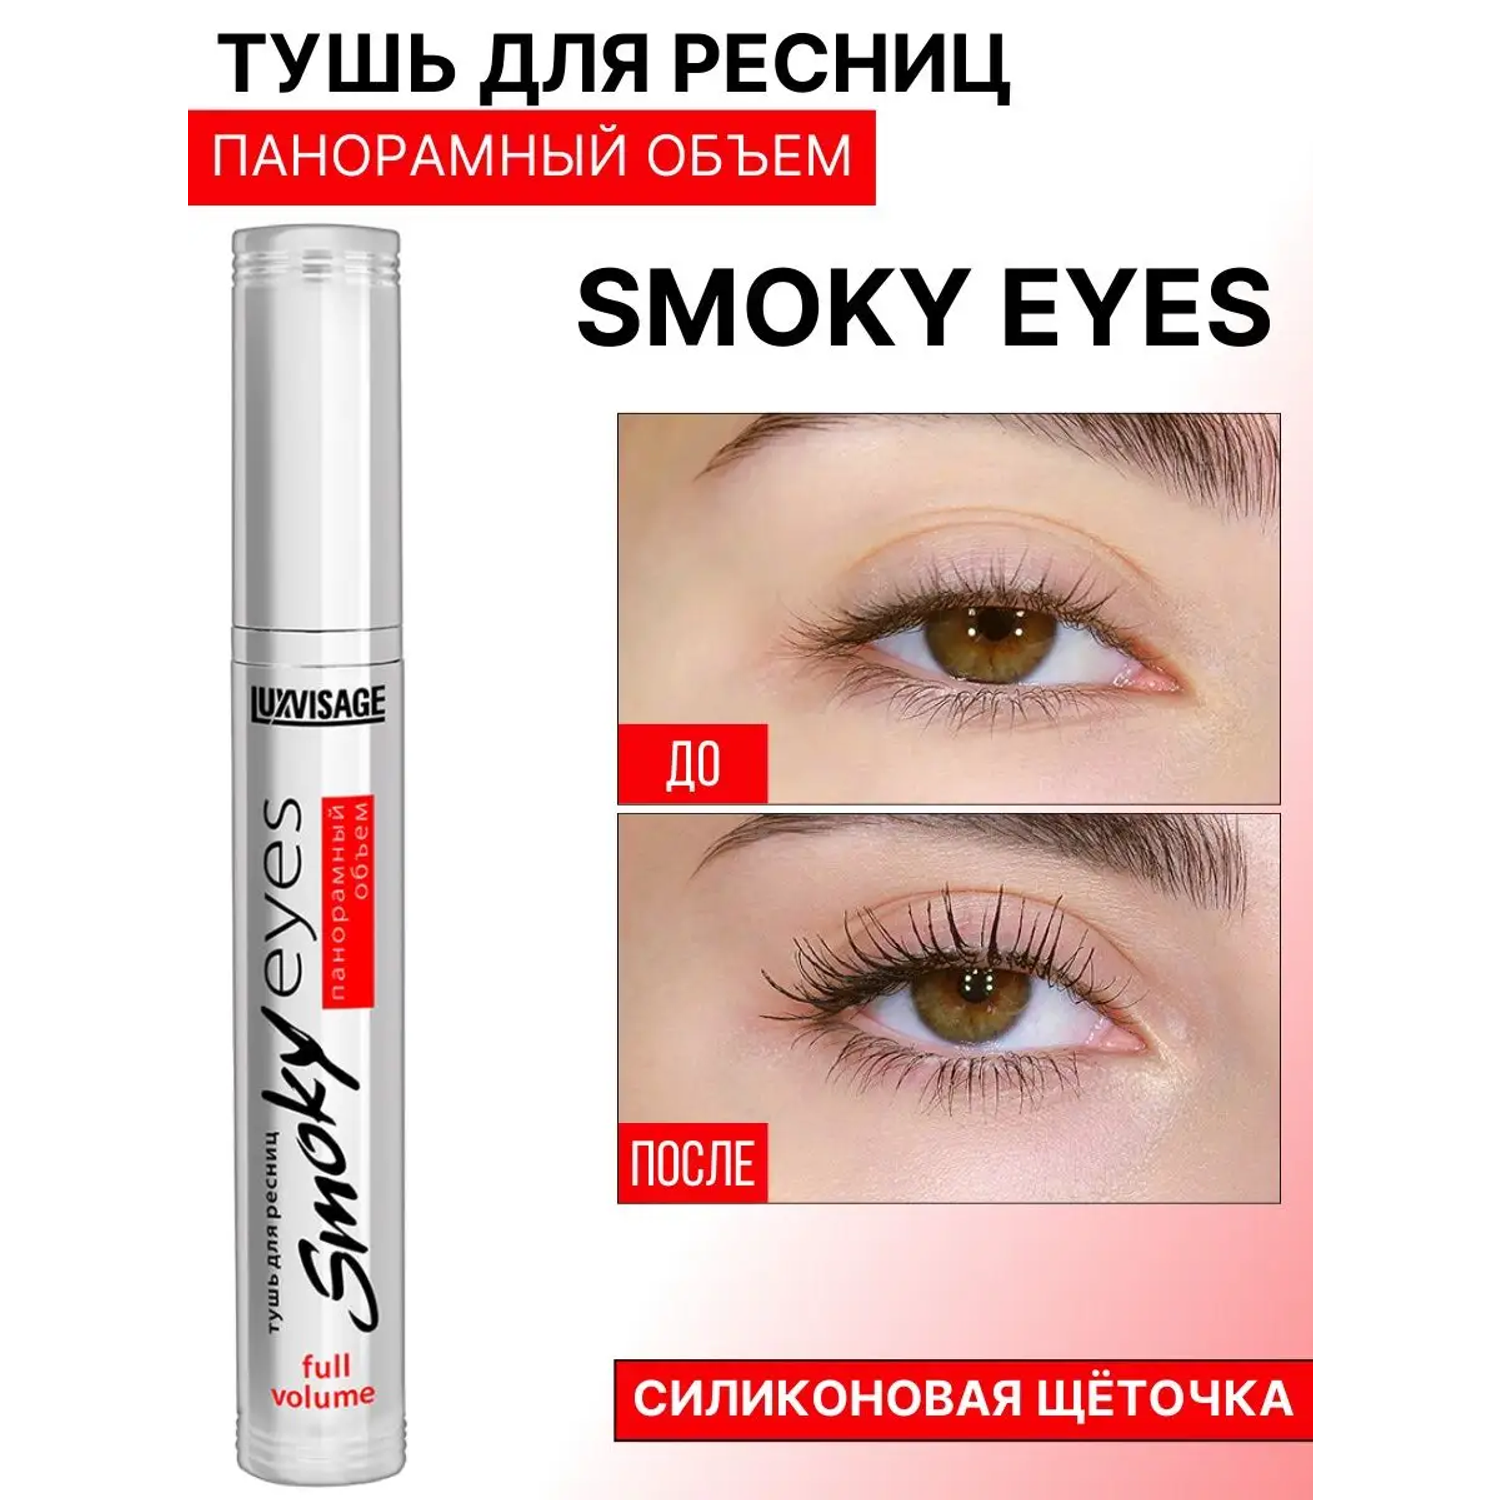 Тушь smoky eyes luxvisage. Тушь LUXVISAGE Smoky Eyes. LUXVISAGE. Тушь для ресниц Smoky Eyes. Белорусская тушь для ресниц LUXVISAGE. Тушь панорамный объем LUXVISAGE.